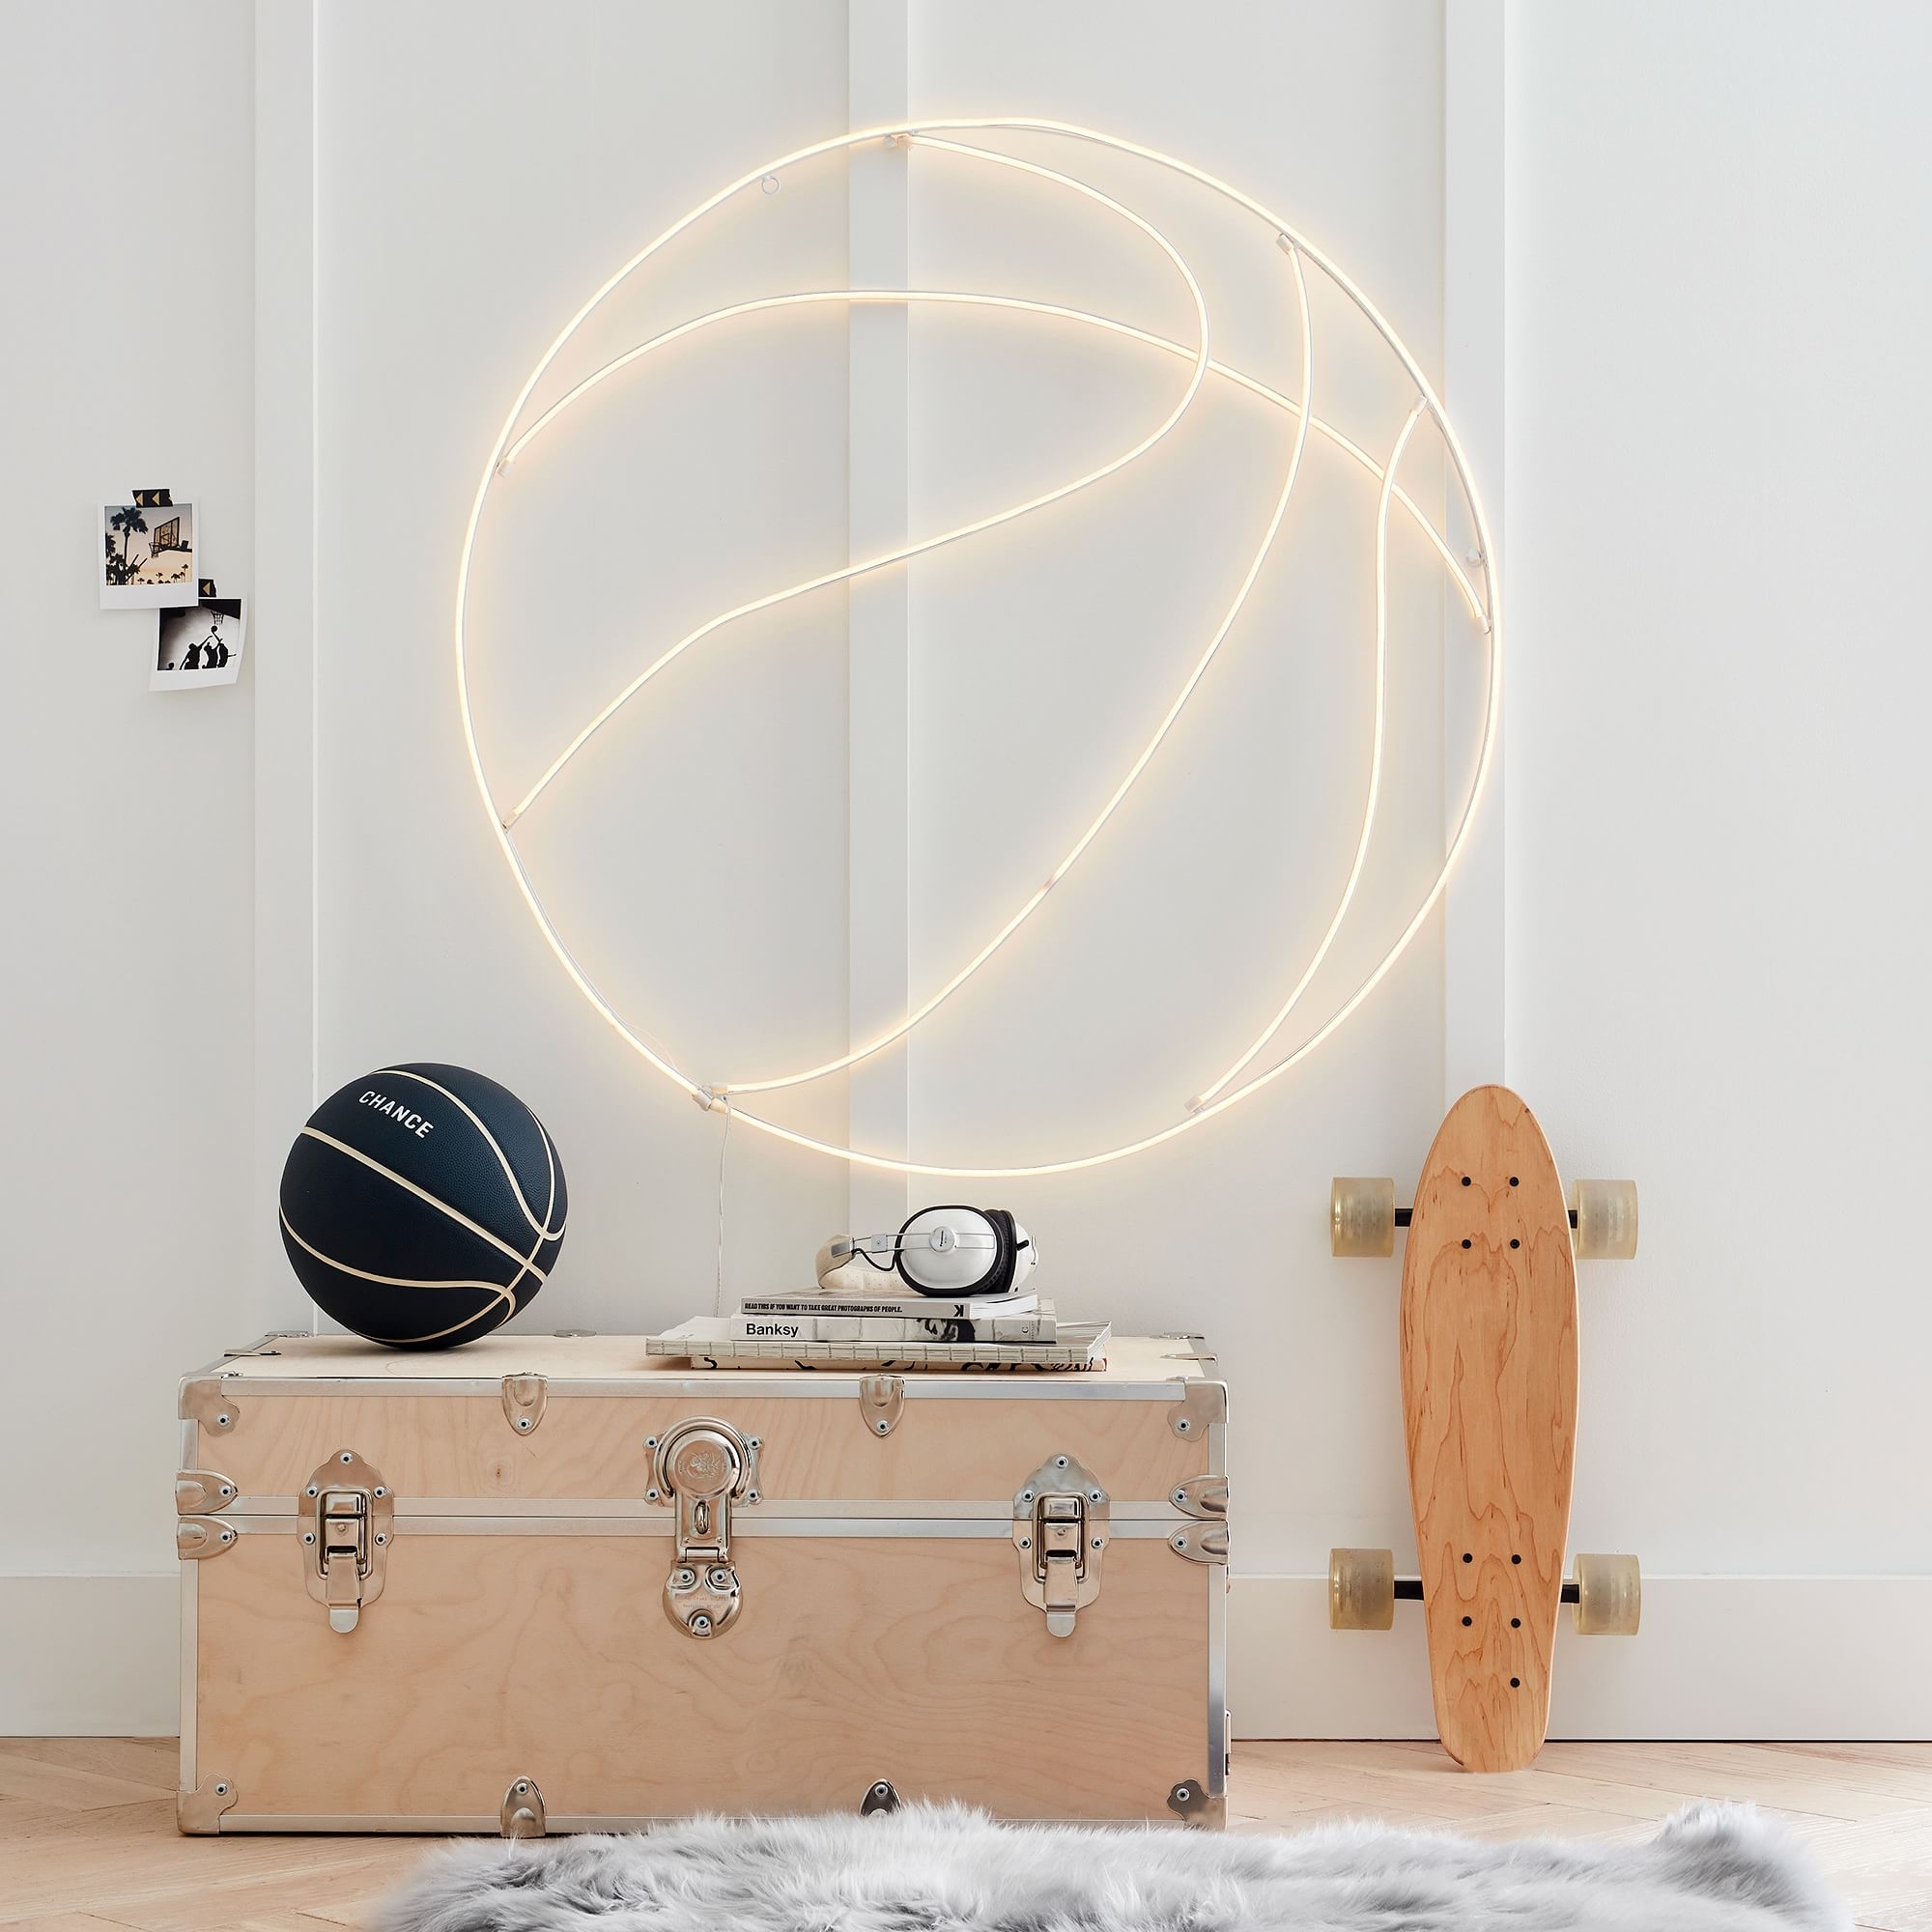 Basketball Wall Light - Image 1